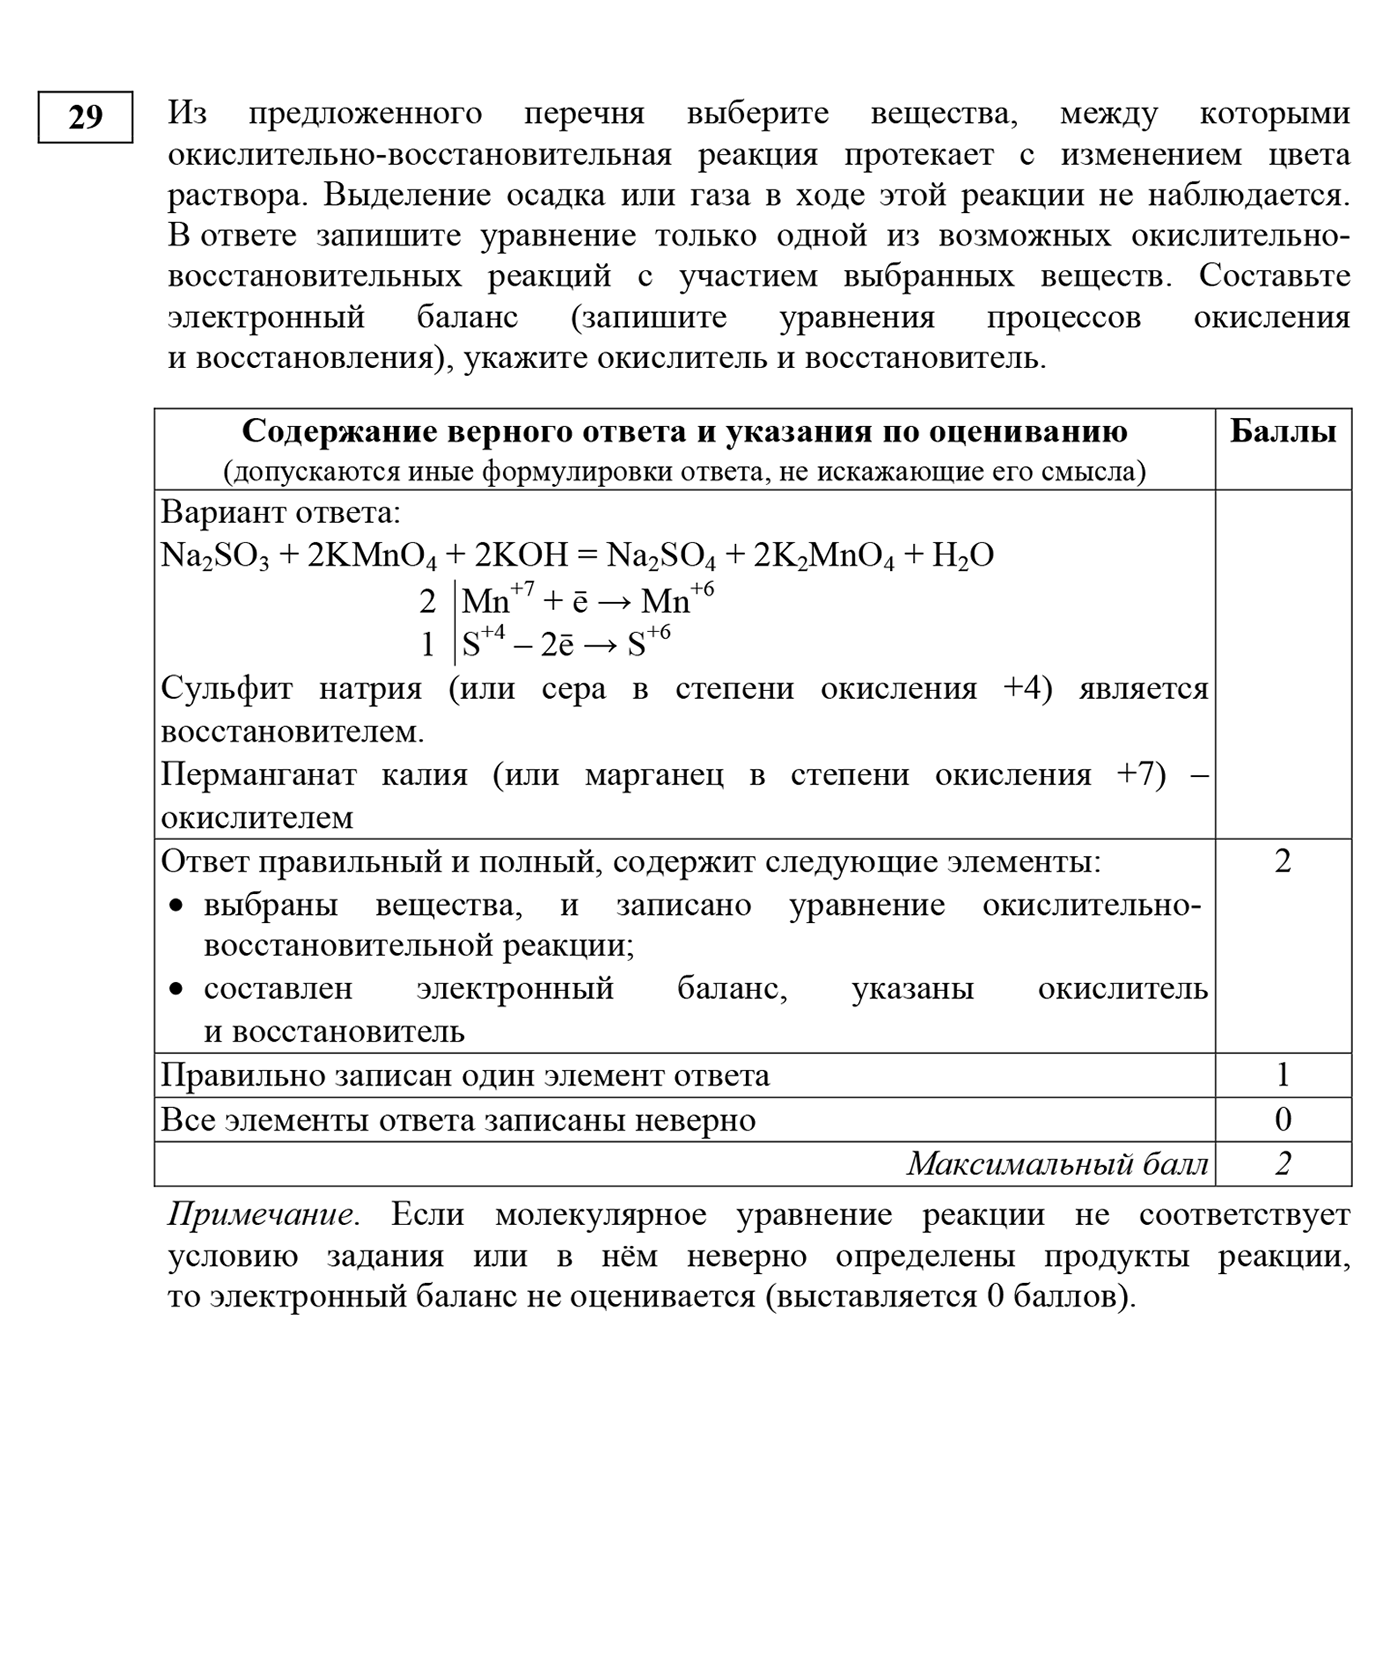 Критерии оценки задания 29 второй части ЕГЭ по химии. Источник: fipi.ru